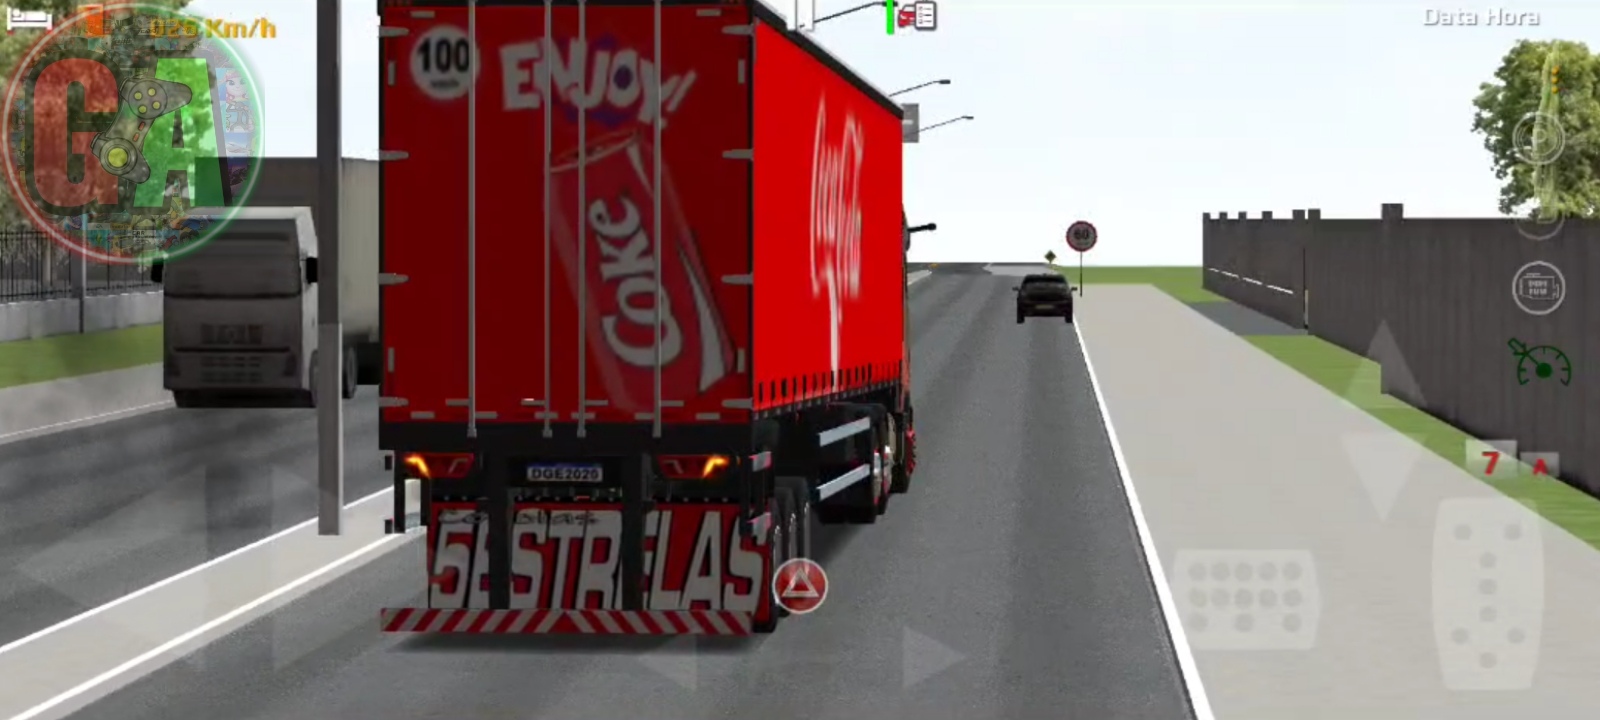 World Truck Driving Simulator MOD APK v1,389 (Dinheiro ilimitado